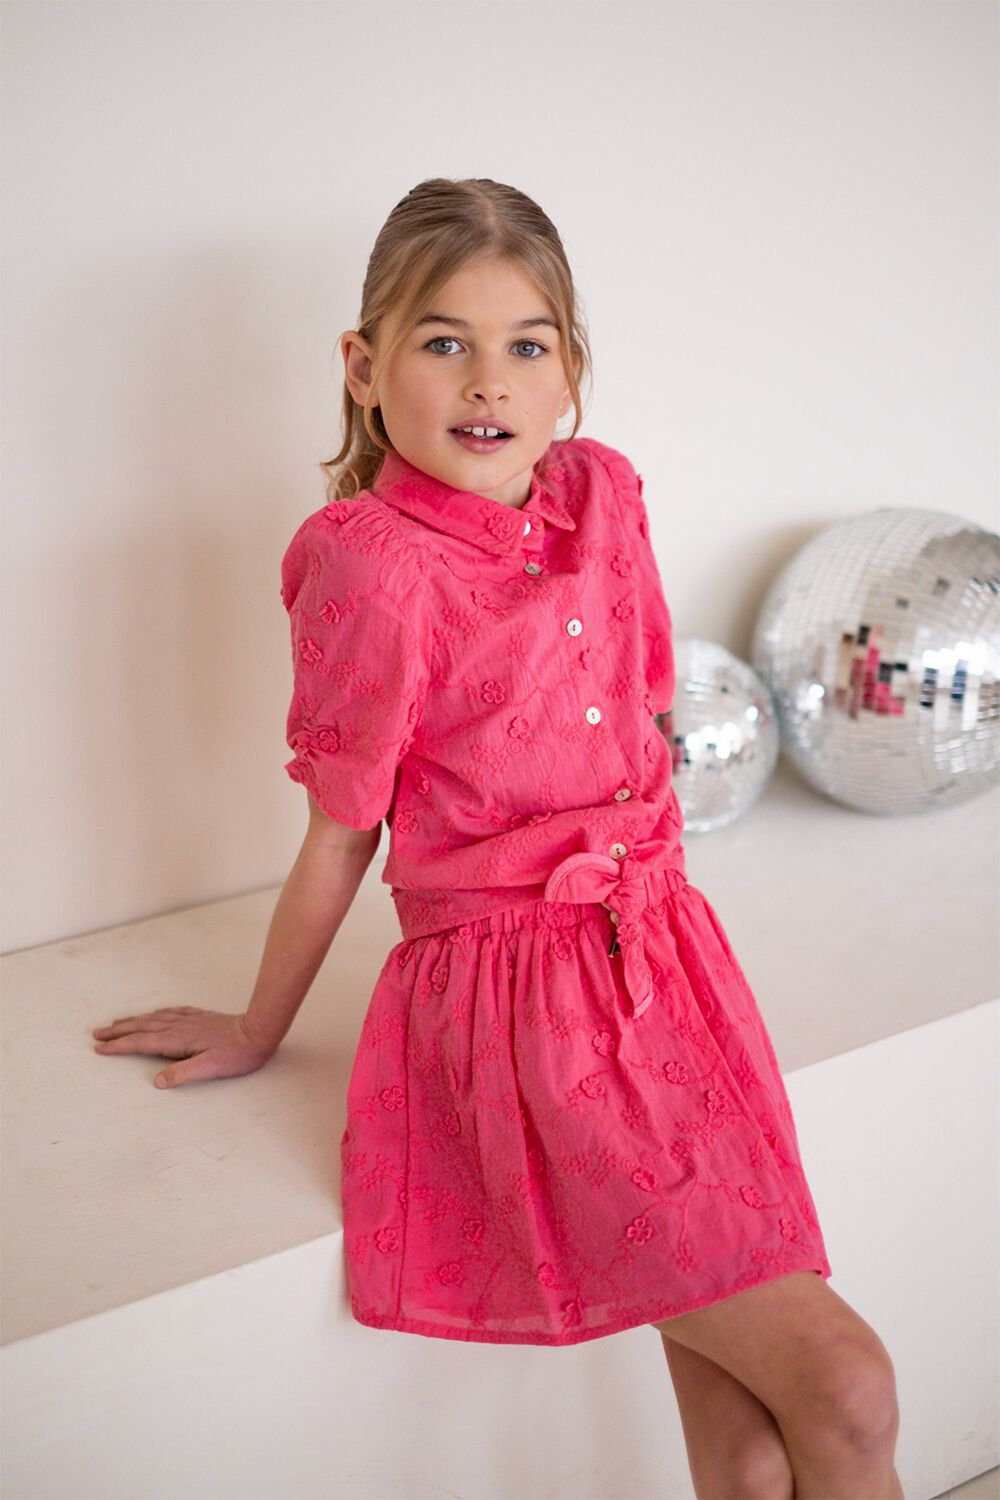 LIKE FLO Meisjes Rokken Broidery Anglais Flower Skirt Roze